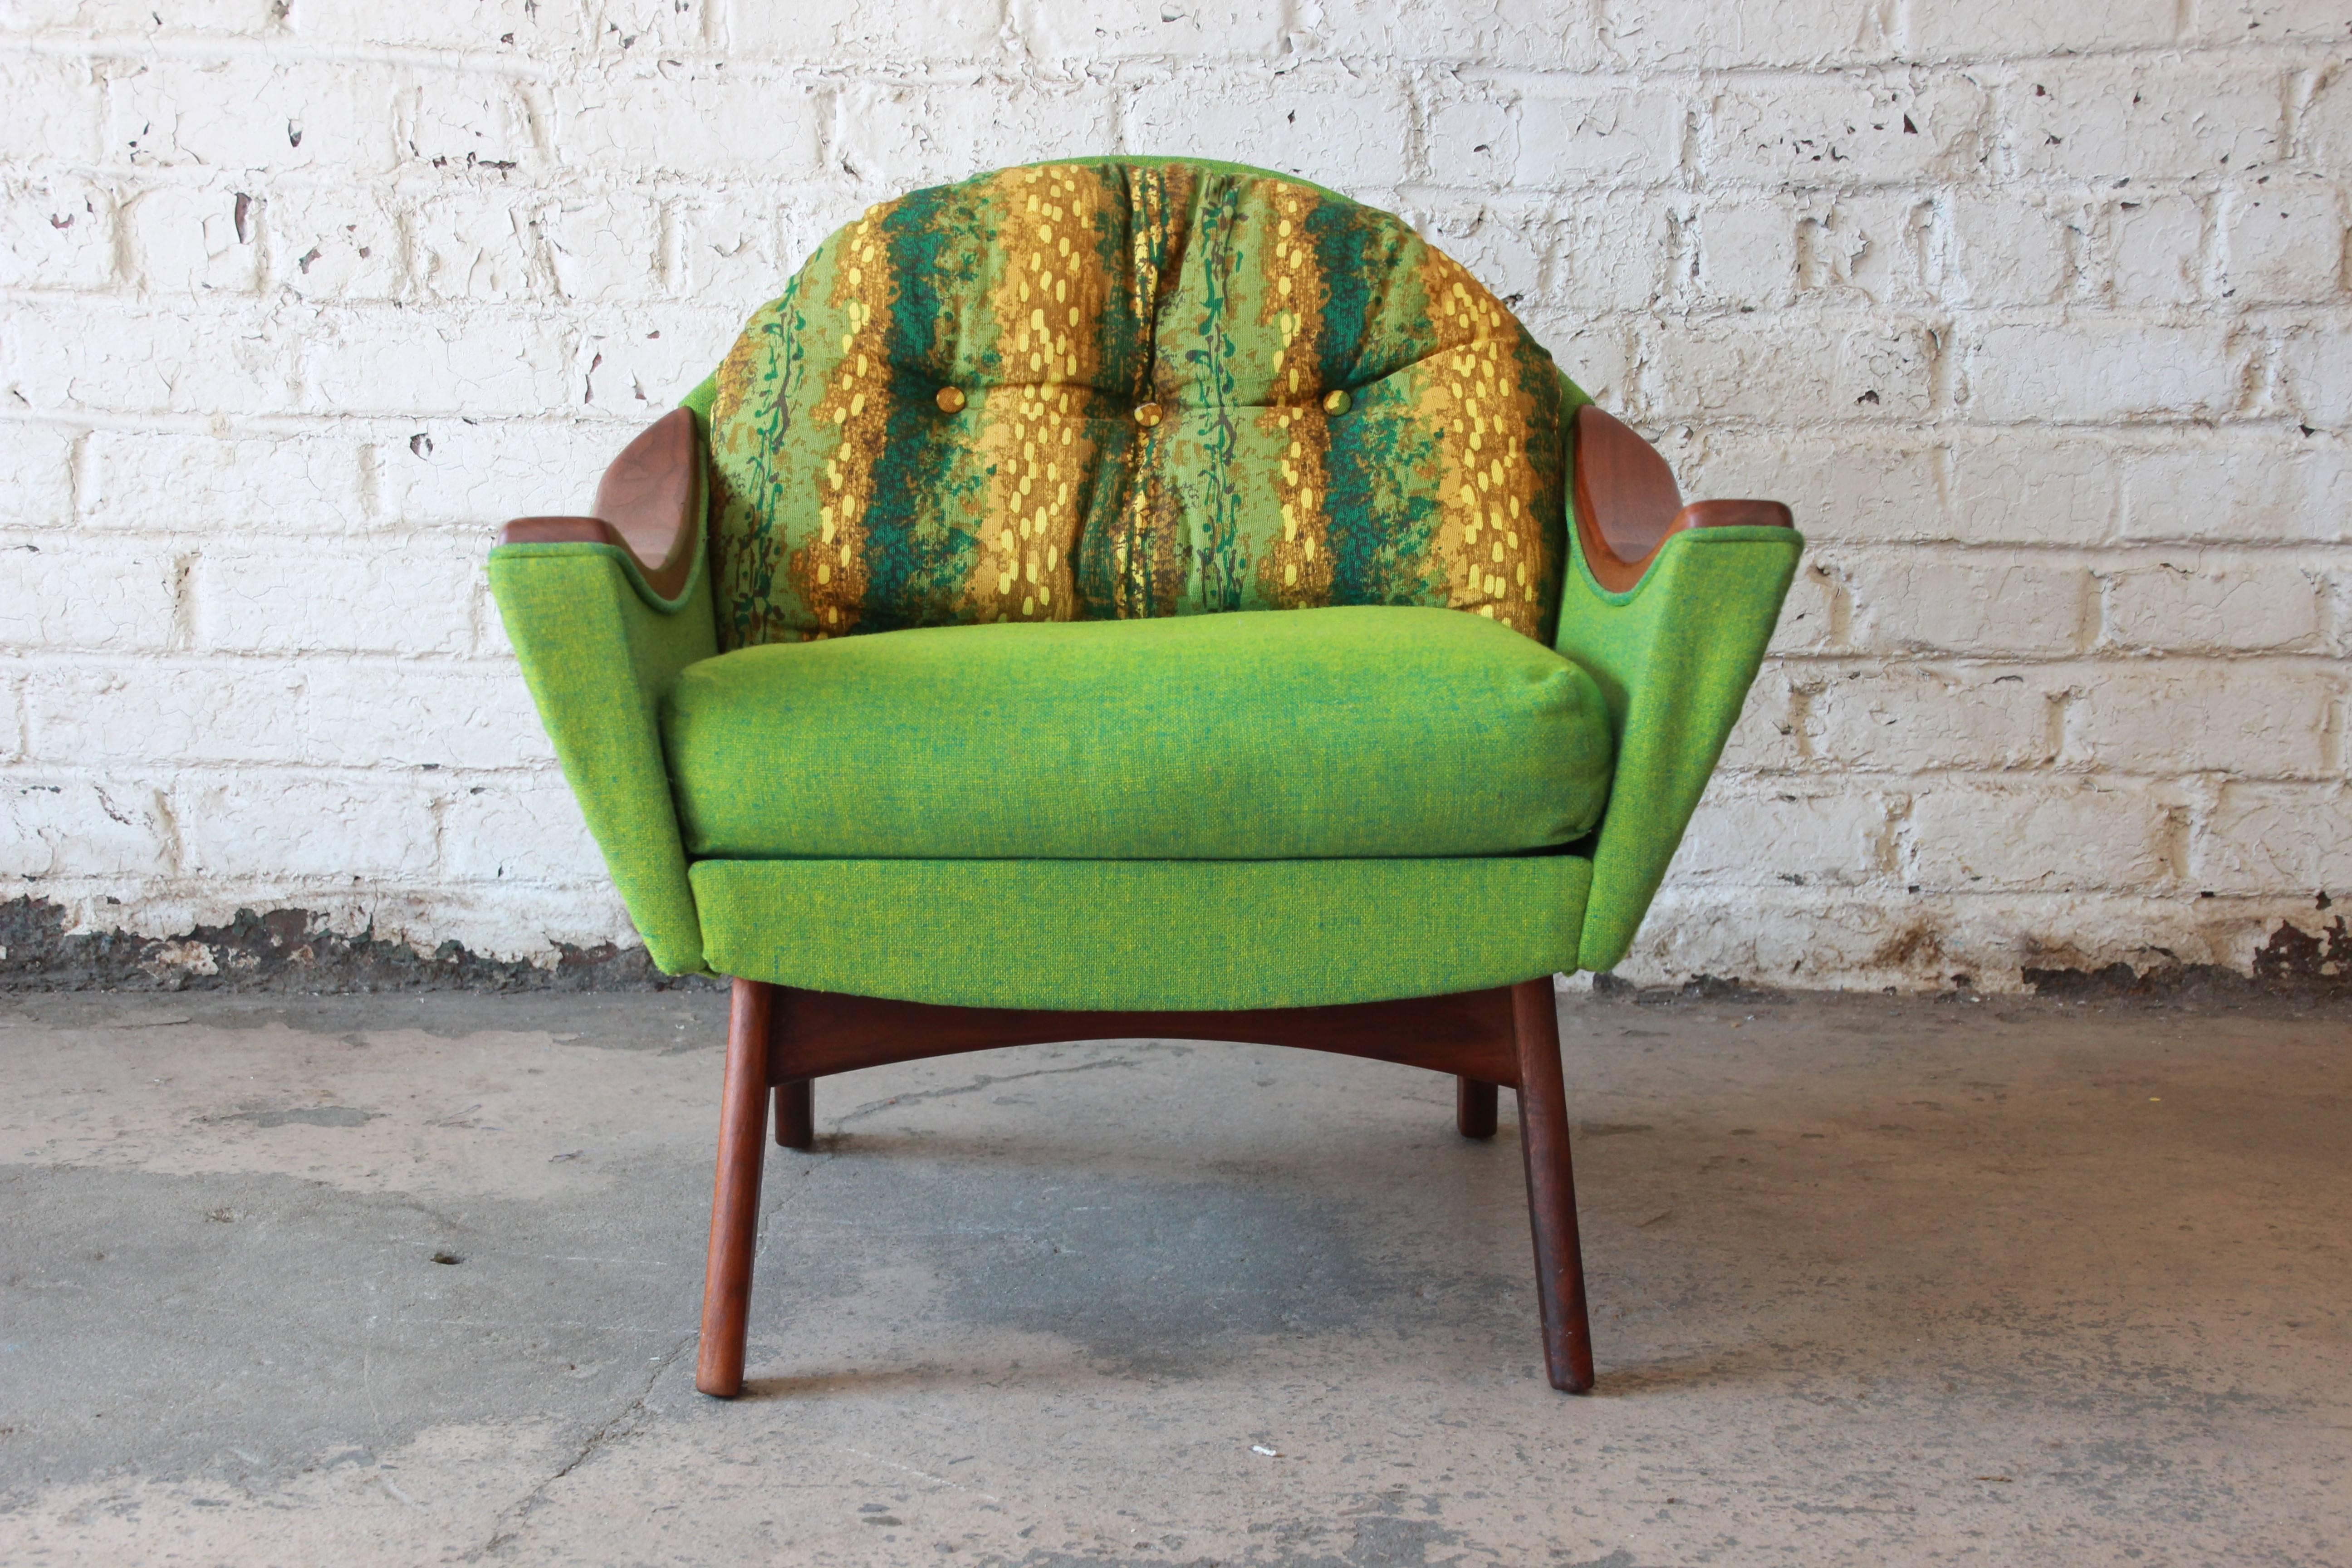 Original Adrian Pearsall Mid-Century Modern Lounge Chairs für Sie und Ihn:: 1960er (Walnuss)